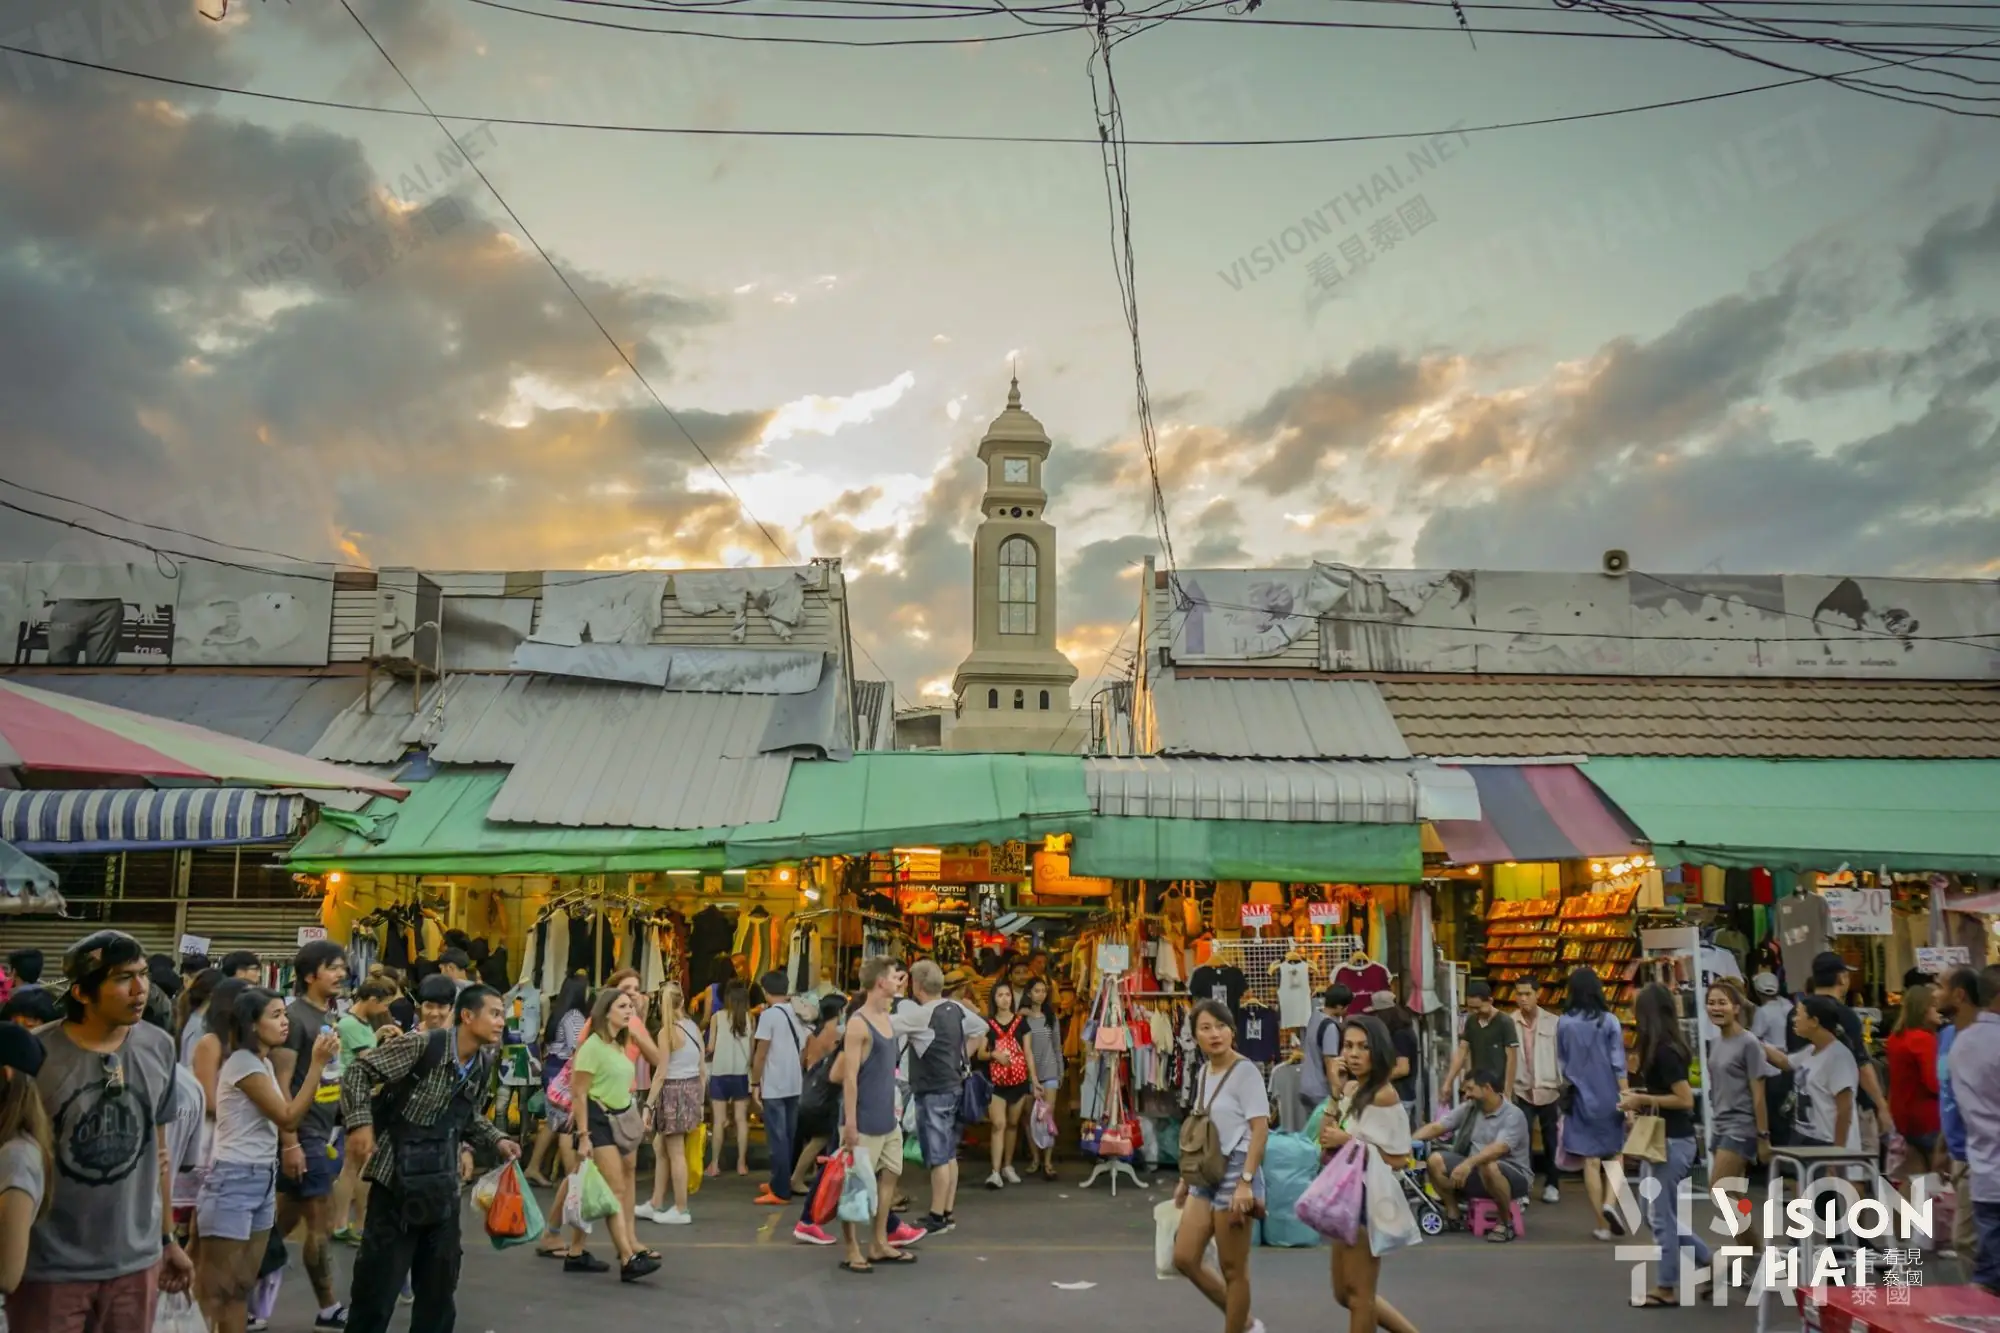 洽图洽週末市集（恰图恰週末市集 ; Chatuchak Weekend Market）号称是全球最大市集（图片来源：Vision Thai看见泰国）